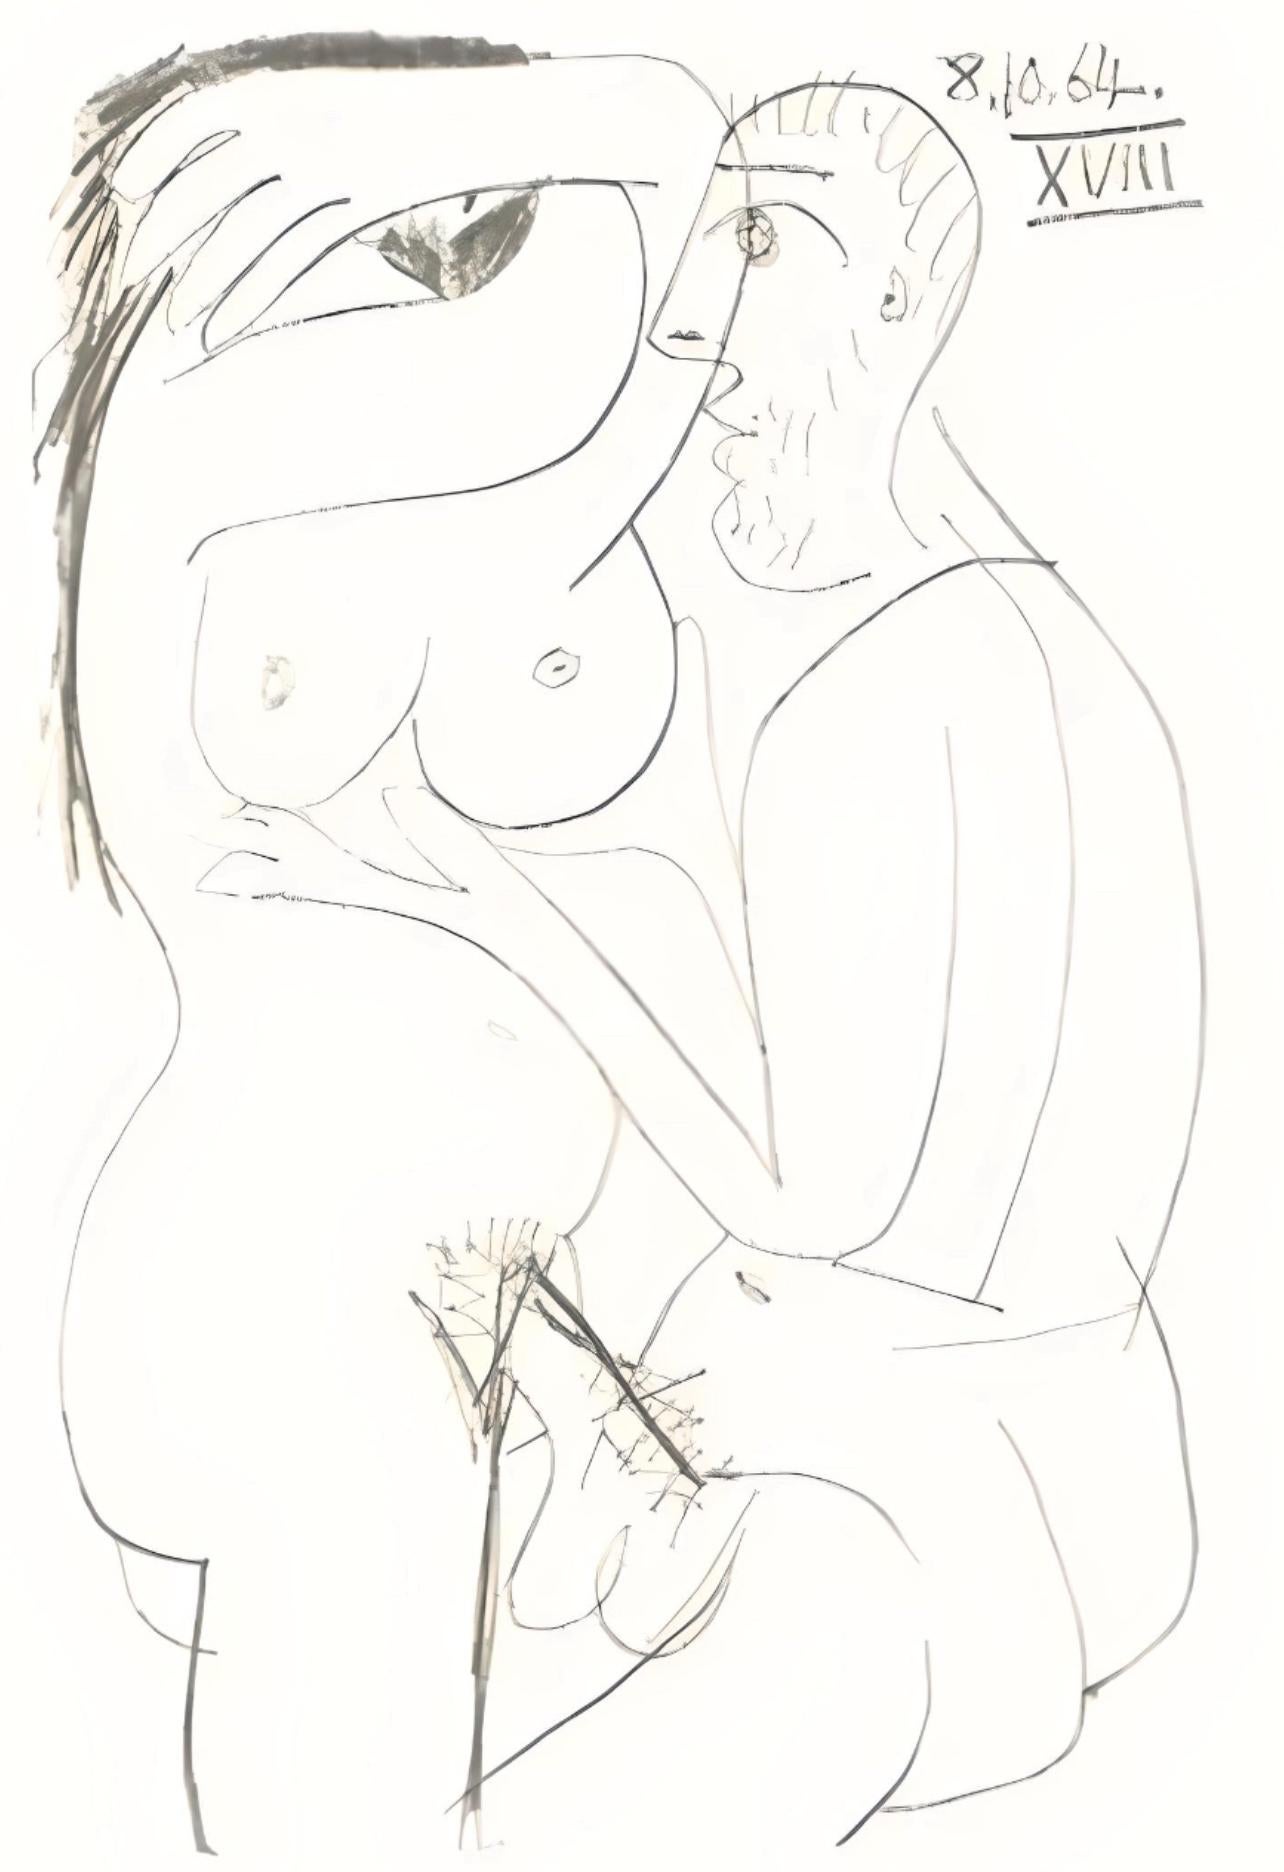 Picasso, Le Goût du Bonheur 67 (Cramer 148; Bloch 2013) (after) - Print by Pablo Picasso